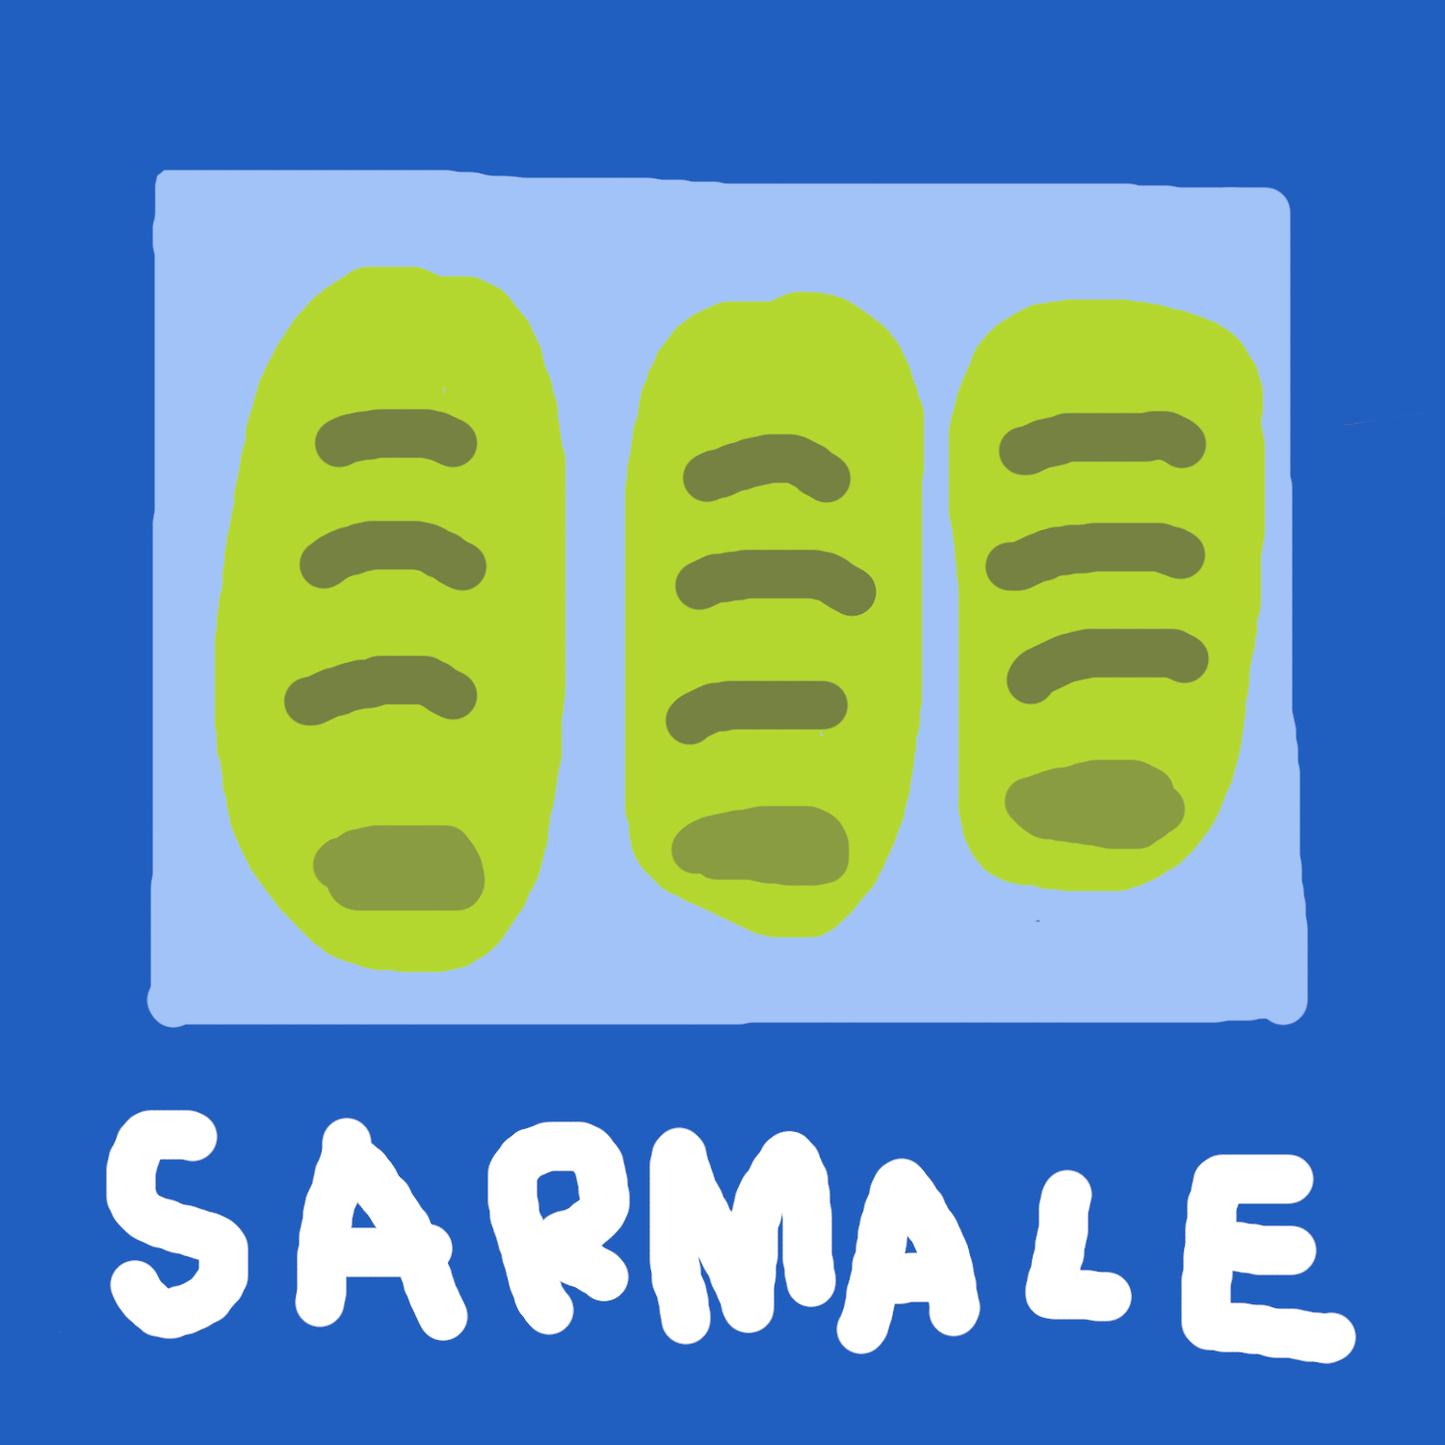 Sarmale